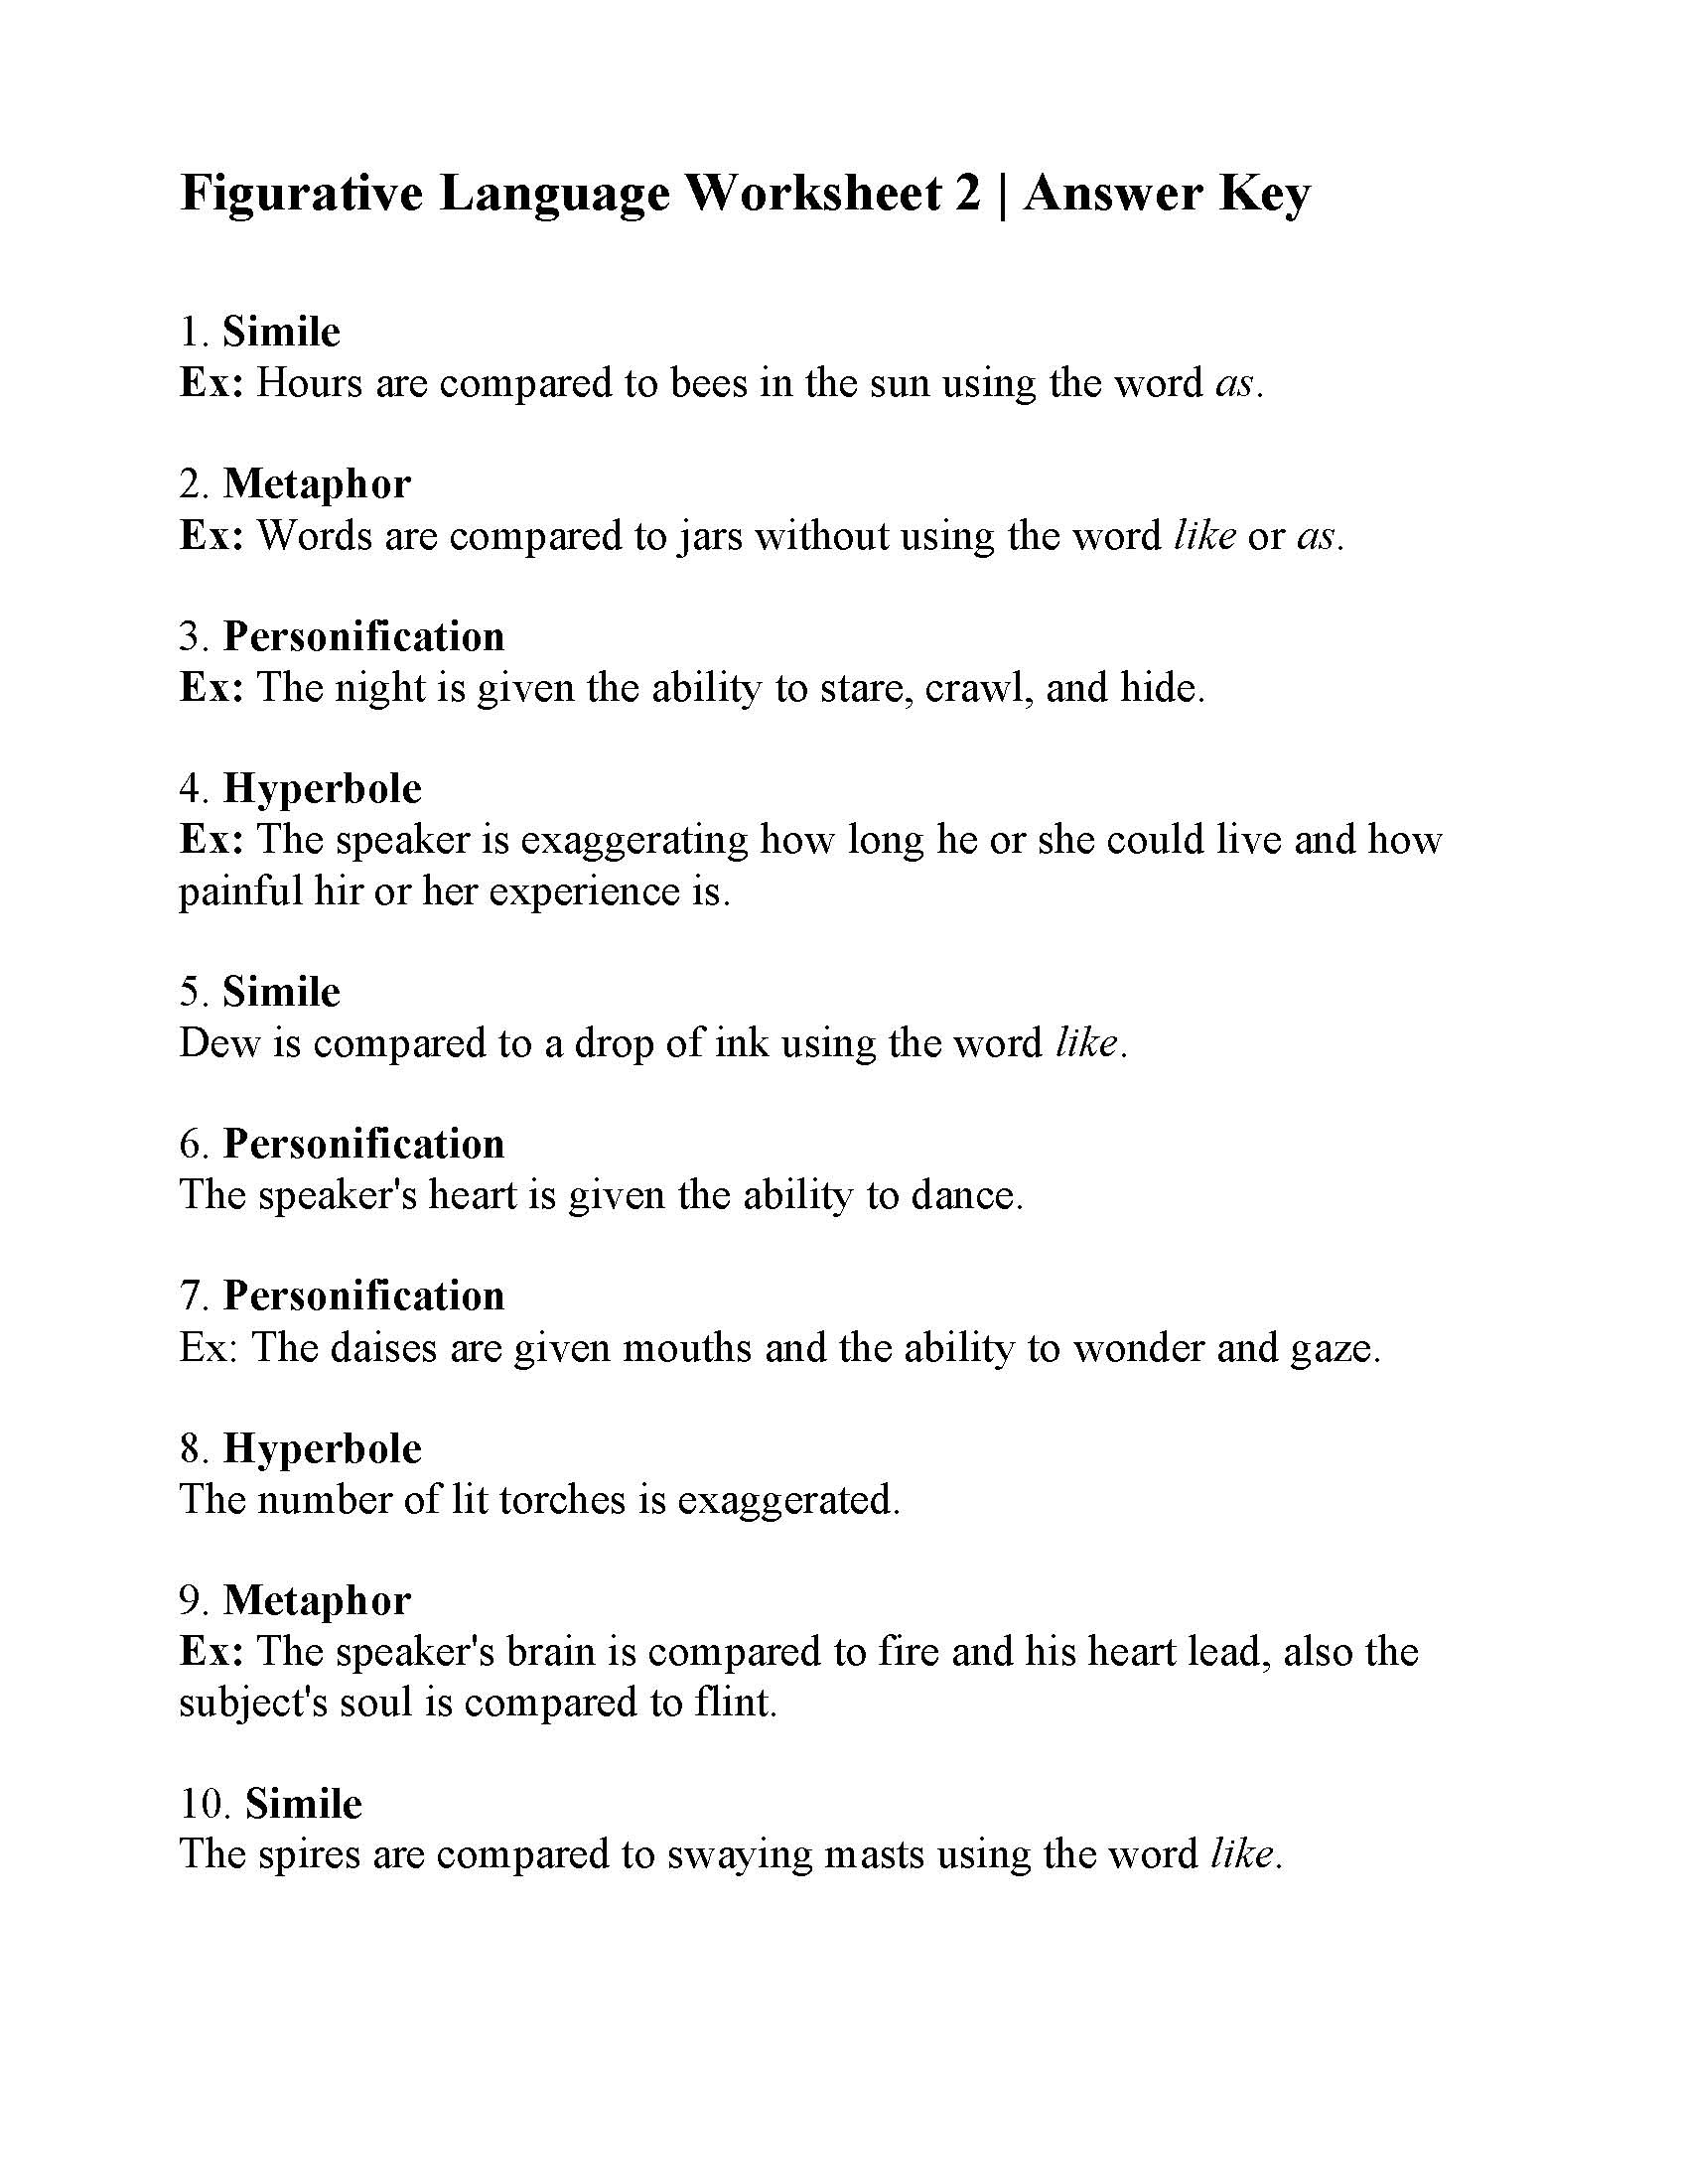 Figurative Language Worksheet 2 Reading Activity